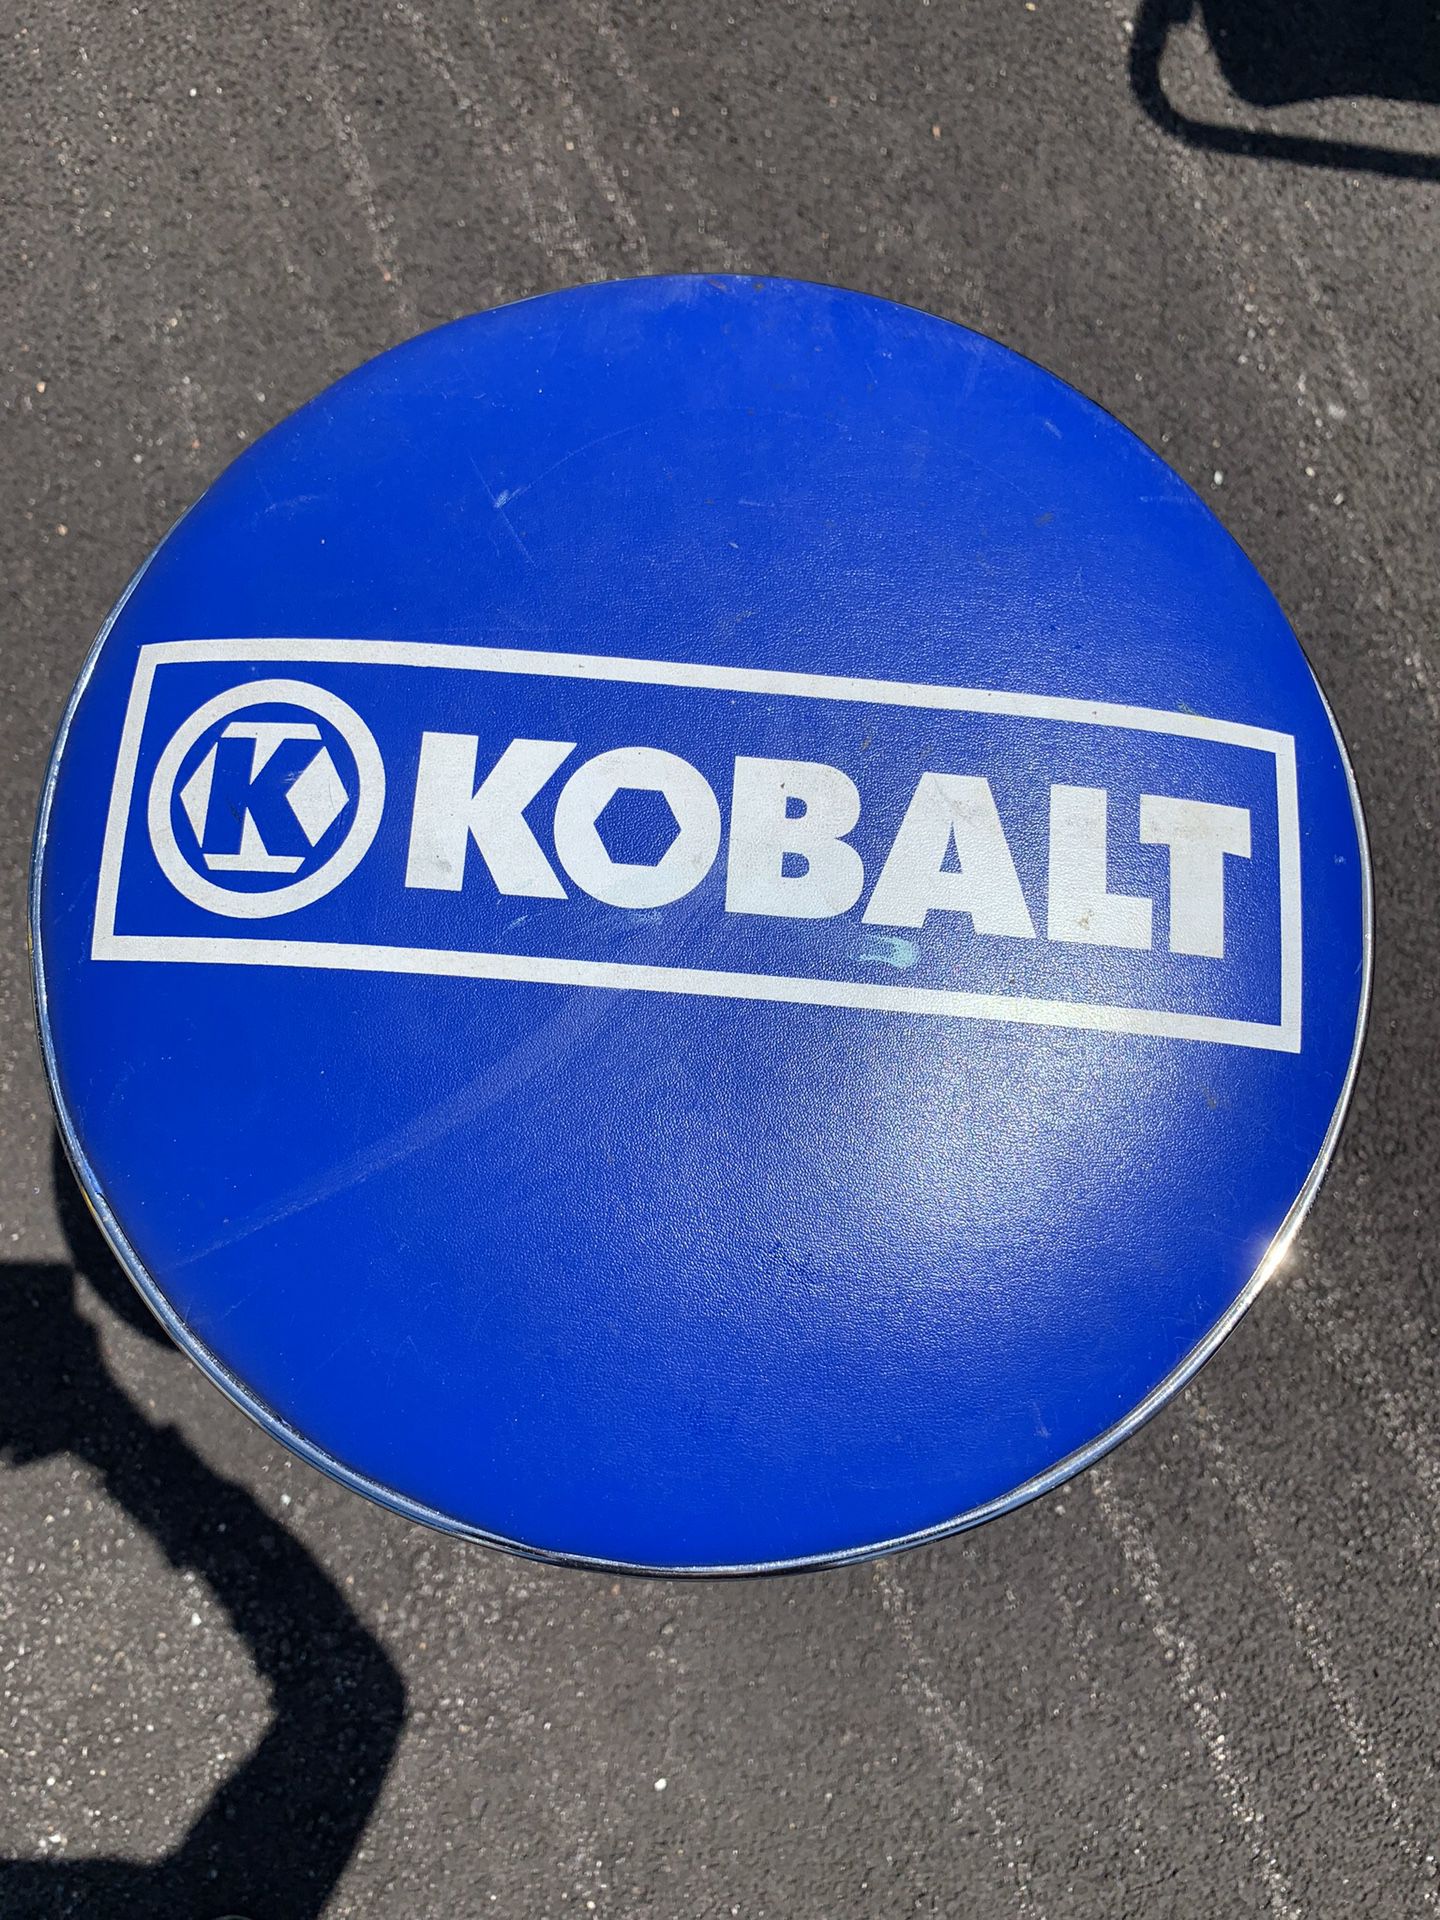 Kobalt Work Seat at